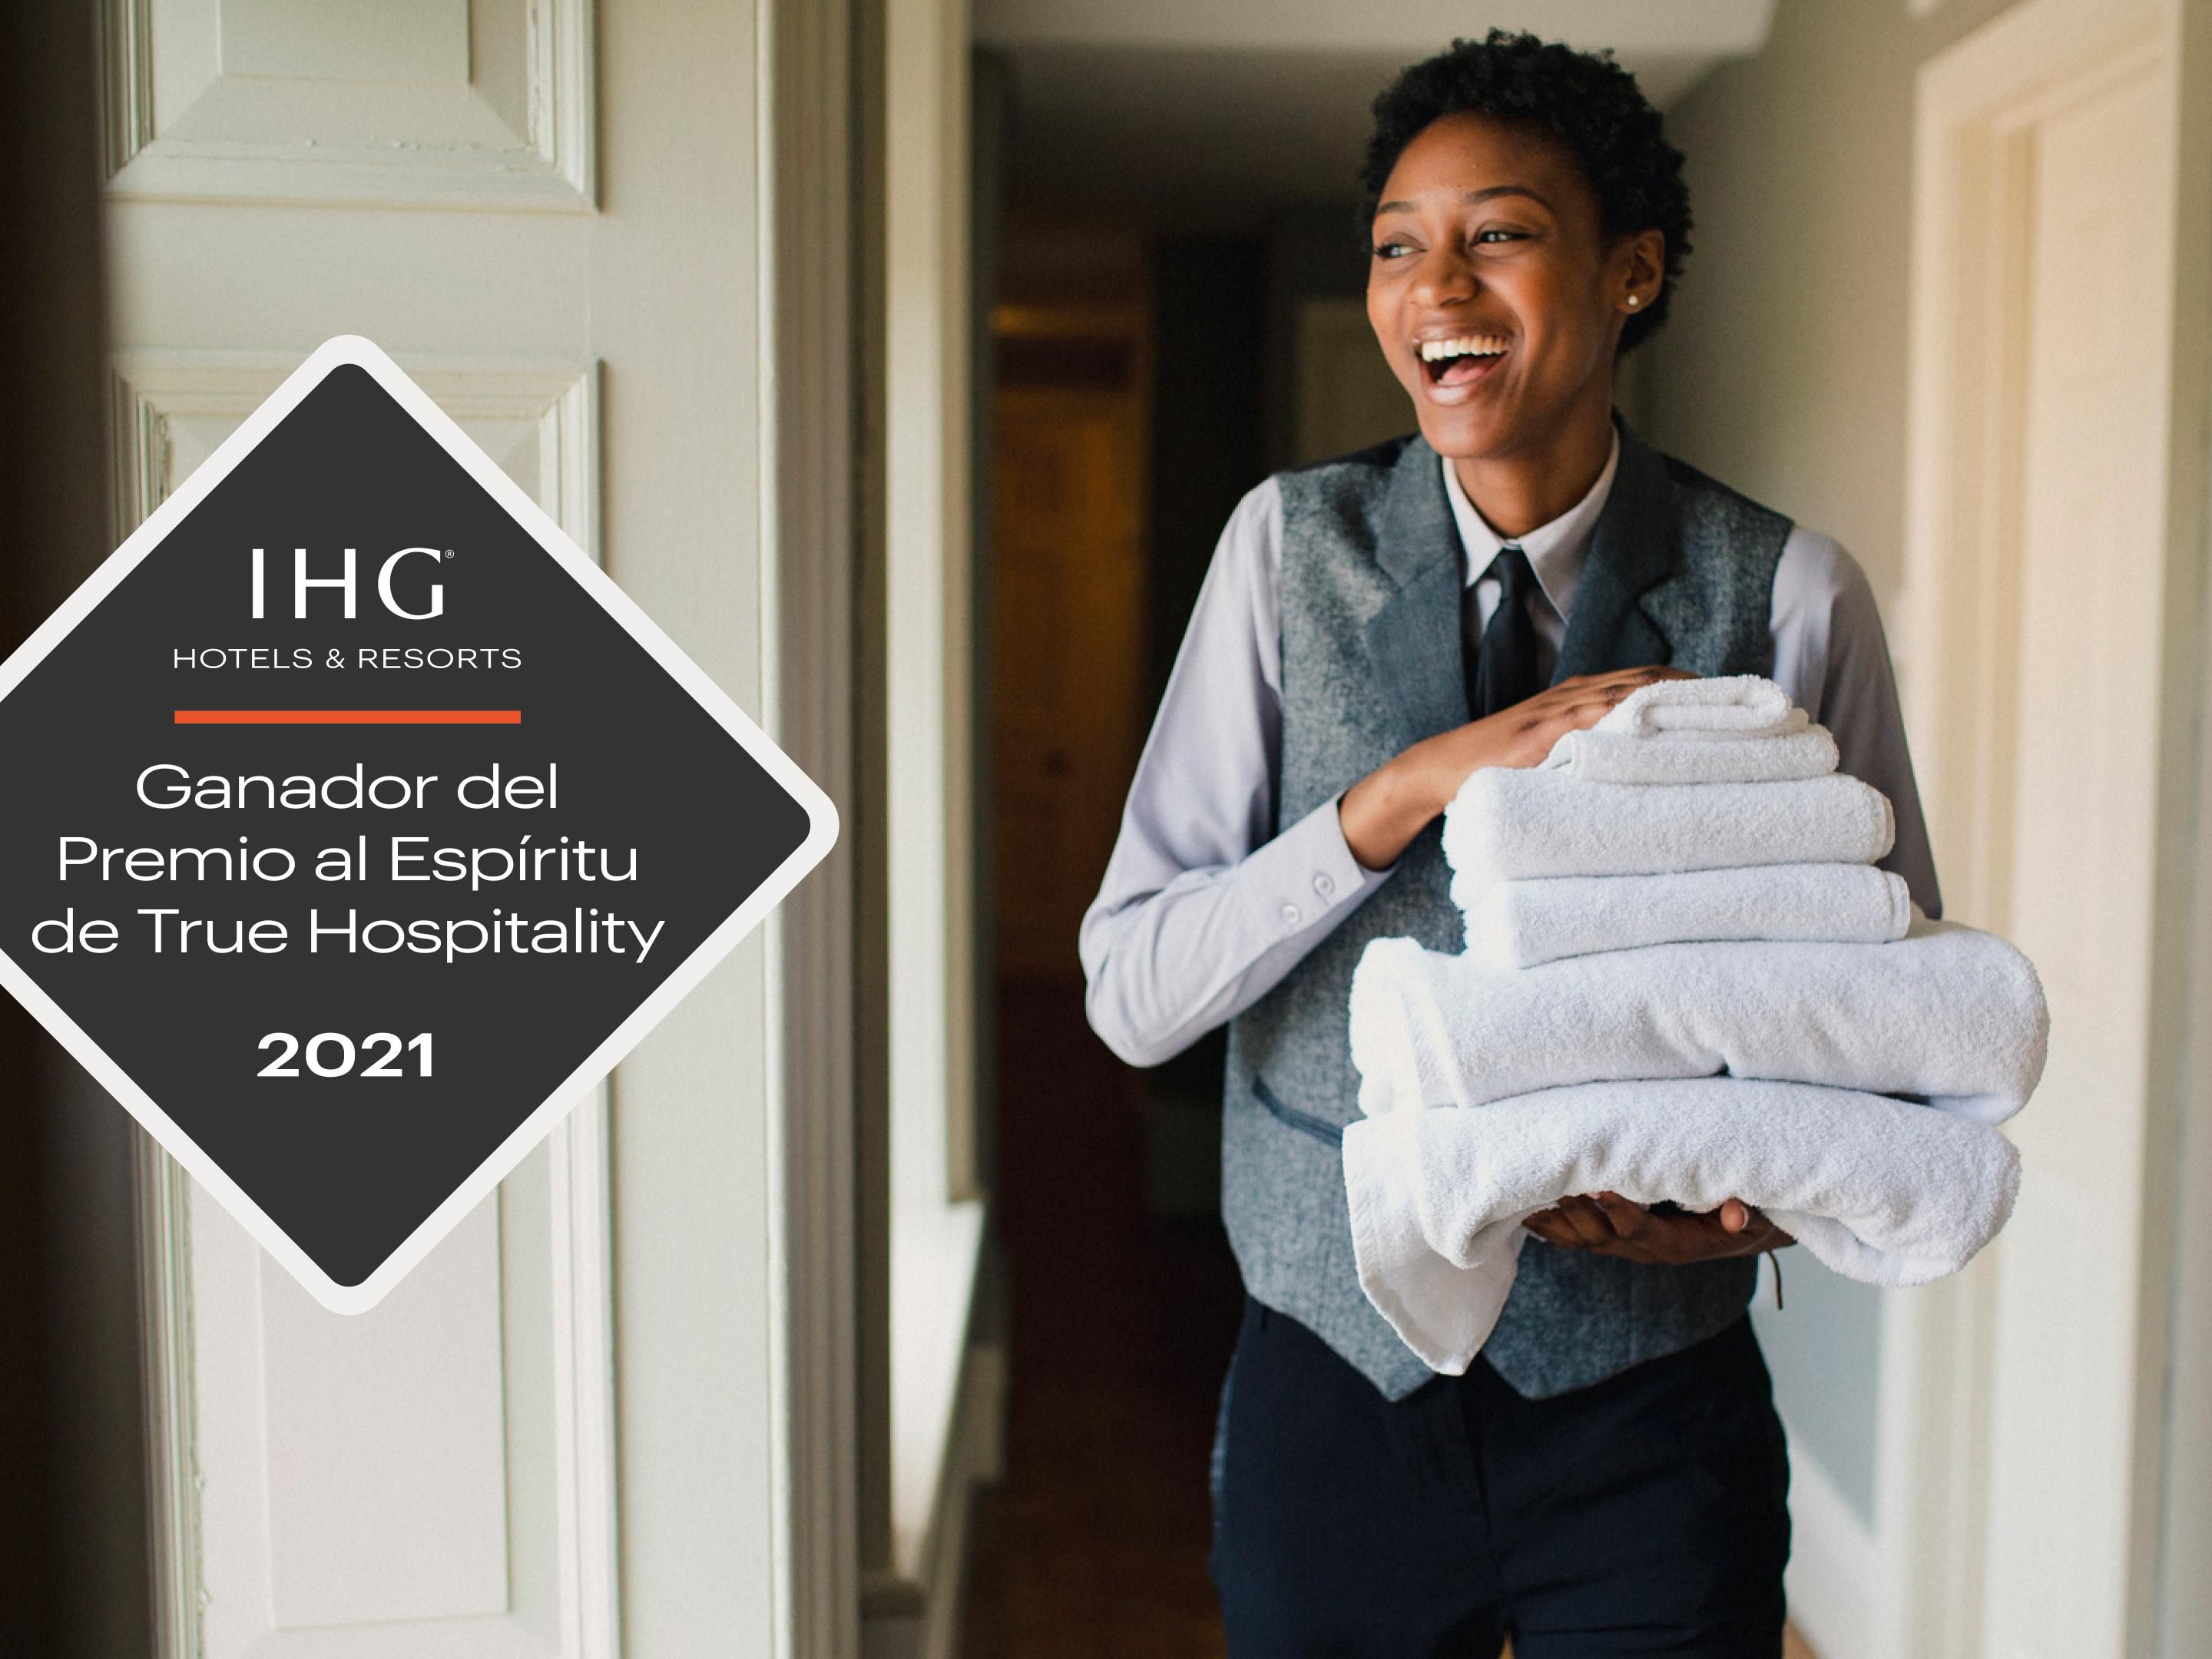 Este hotel fue reconocido entre
los más de 4000 hoteles del sistema IHG América por lograr
los más altos niveles de excelencia en materia de calidad,
satisfacción y limpieza.